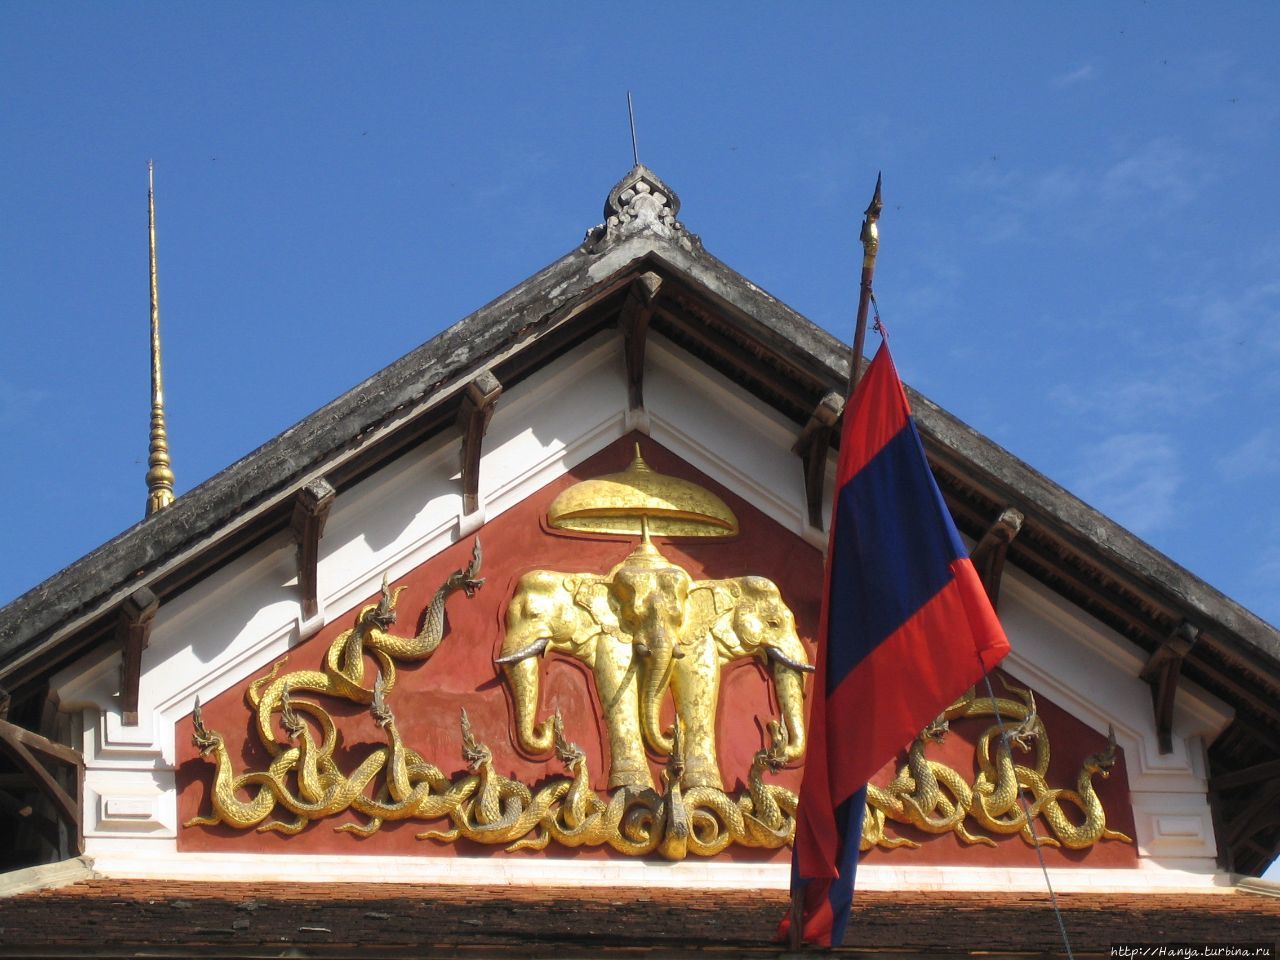 Дворцовый музей Луанг-Прабанг, Лаос